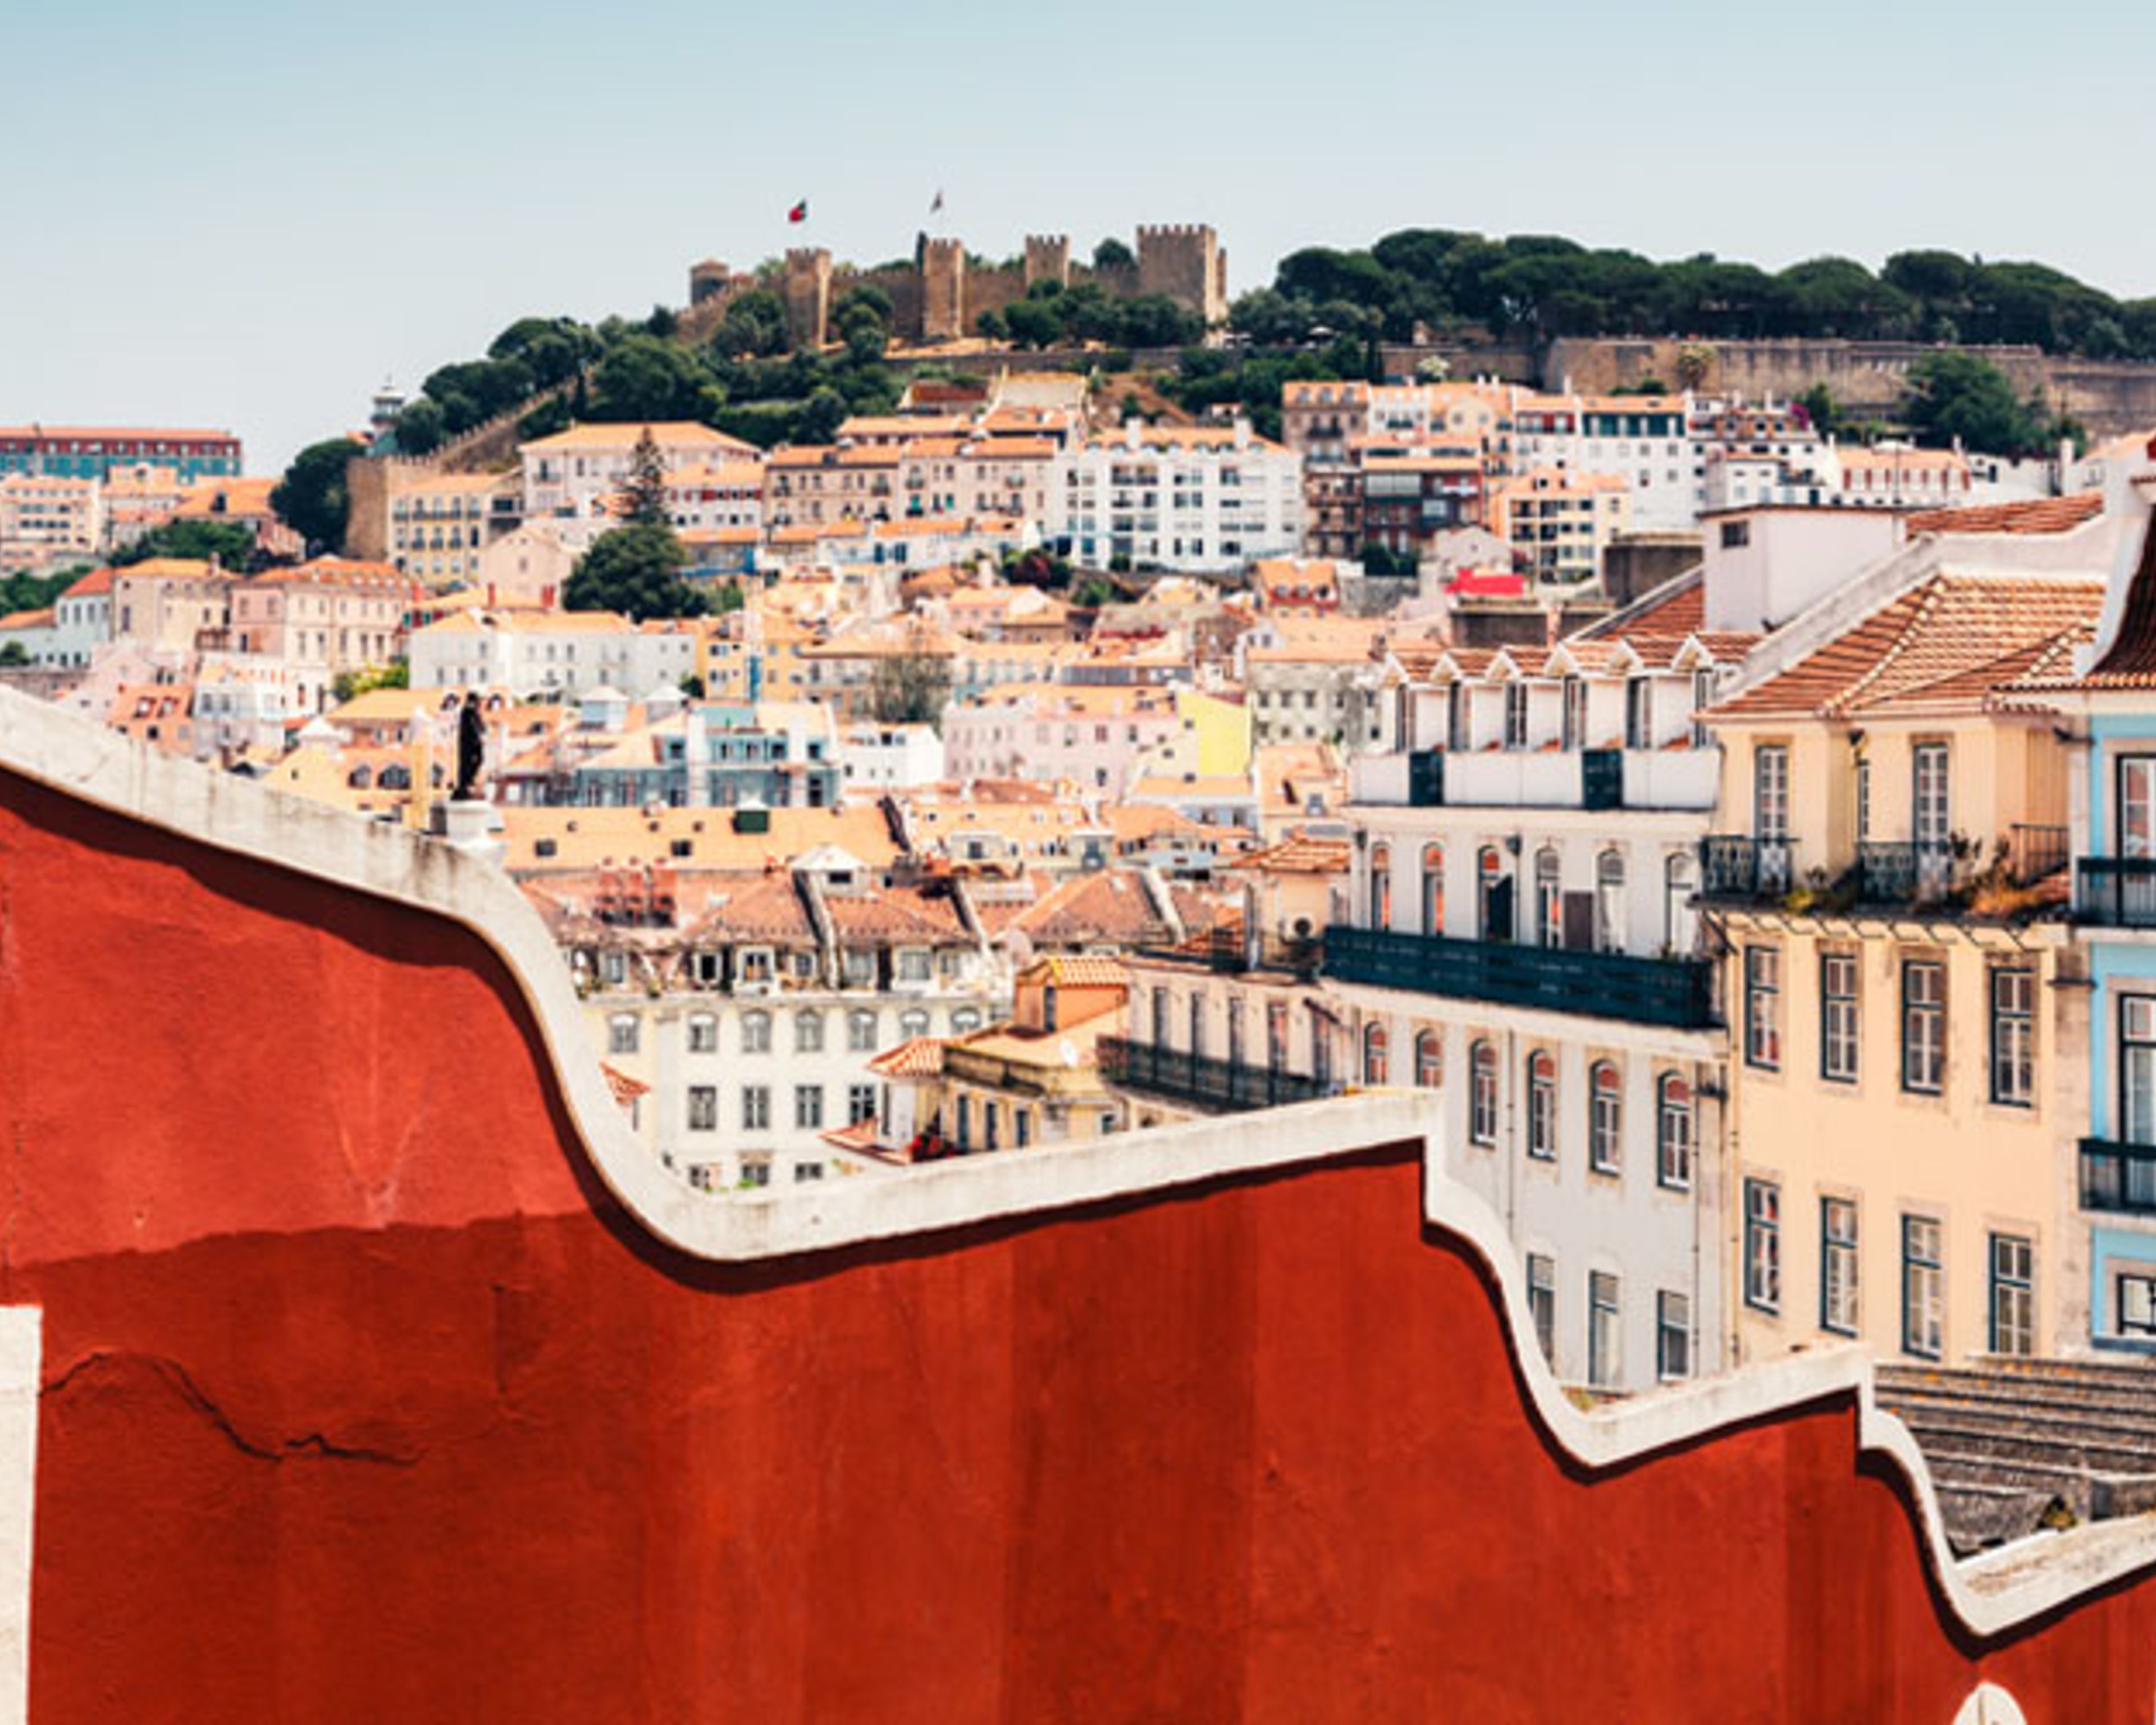 Lisbonne, la cité aux mille couleurs